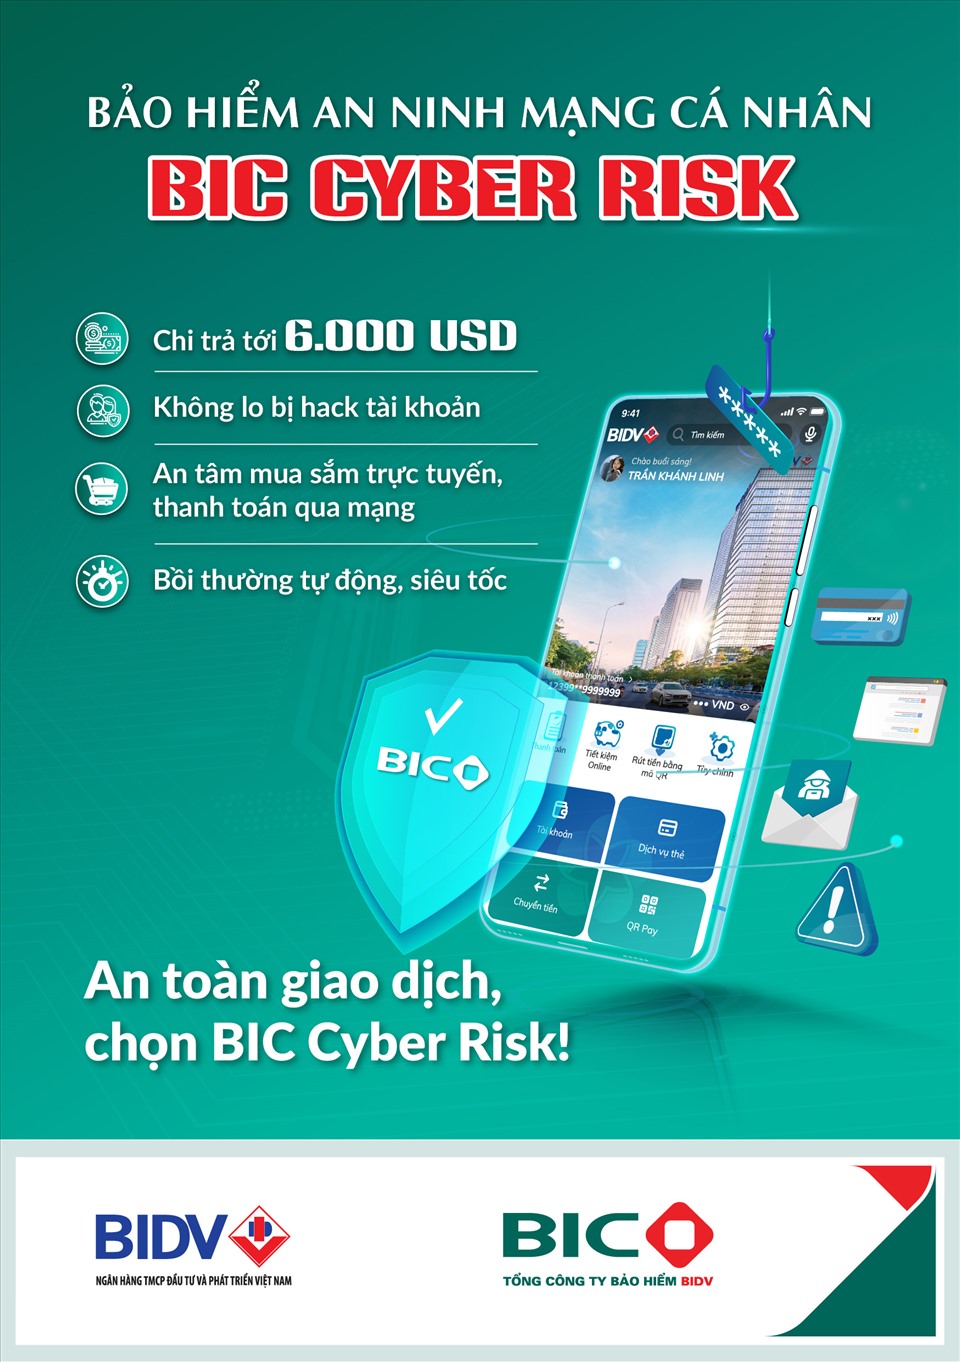 Tổng mức chi trả của BIC Cyber Risk lên tới 6.000 USD. Ảnh: BIC